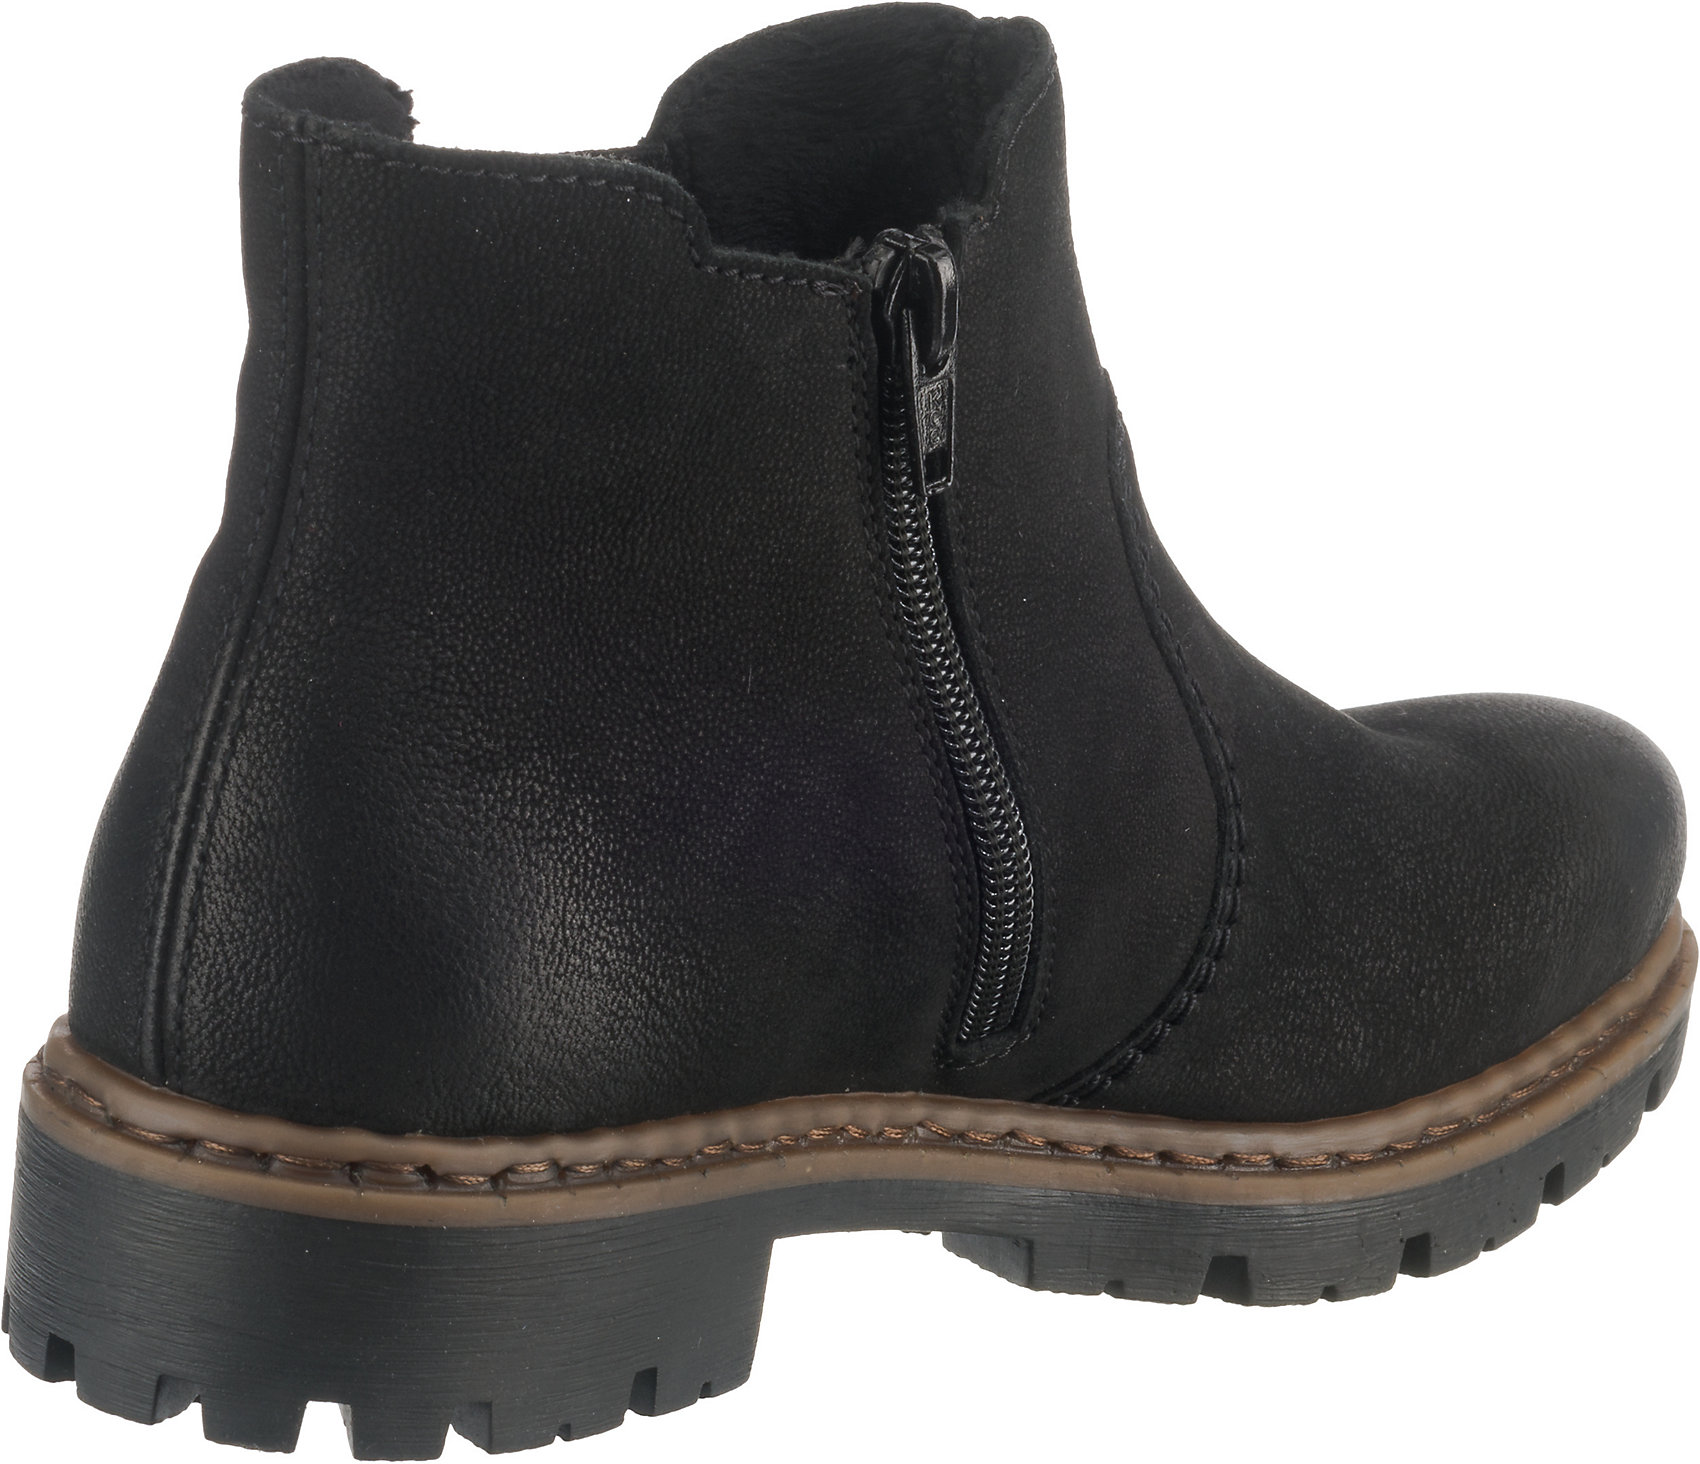 Neu rieker Chelsea Boots 11679403 für Damen schwarz | eBay